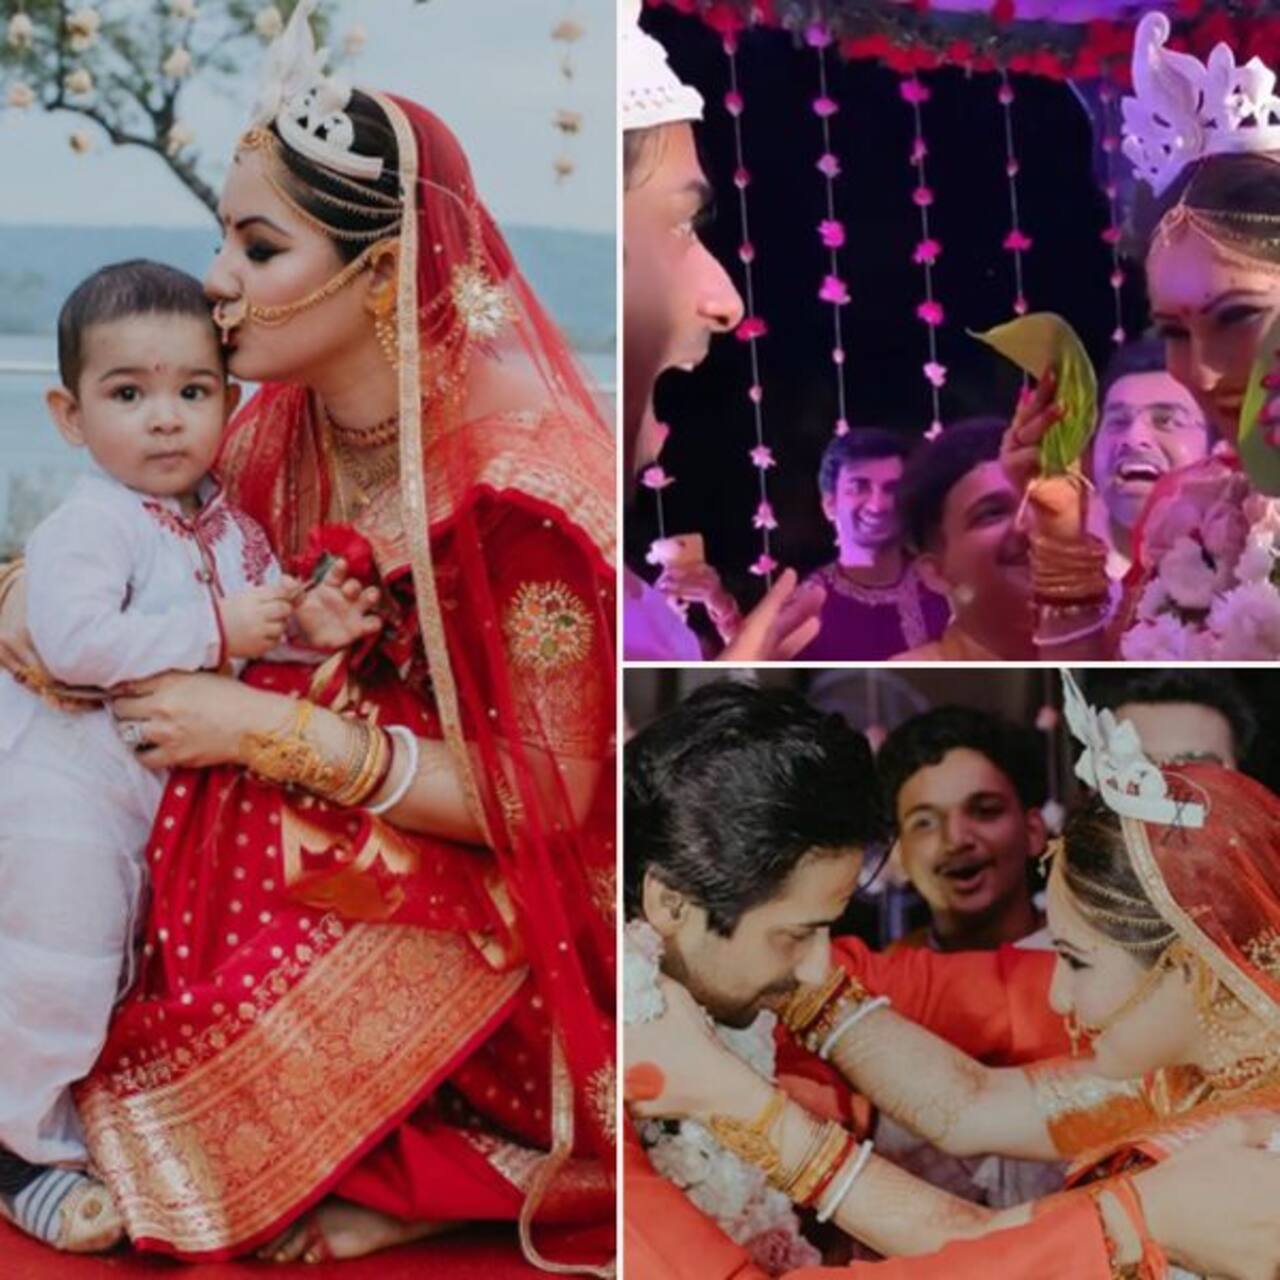 सामने आईं कुणाल वर्मा (Kunal Verma) और पूजा बनर्जी (Puja Banerjee) की शादी की तस्वीरें